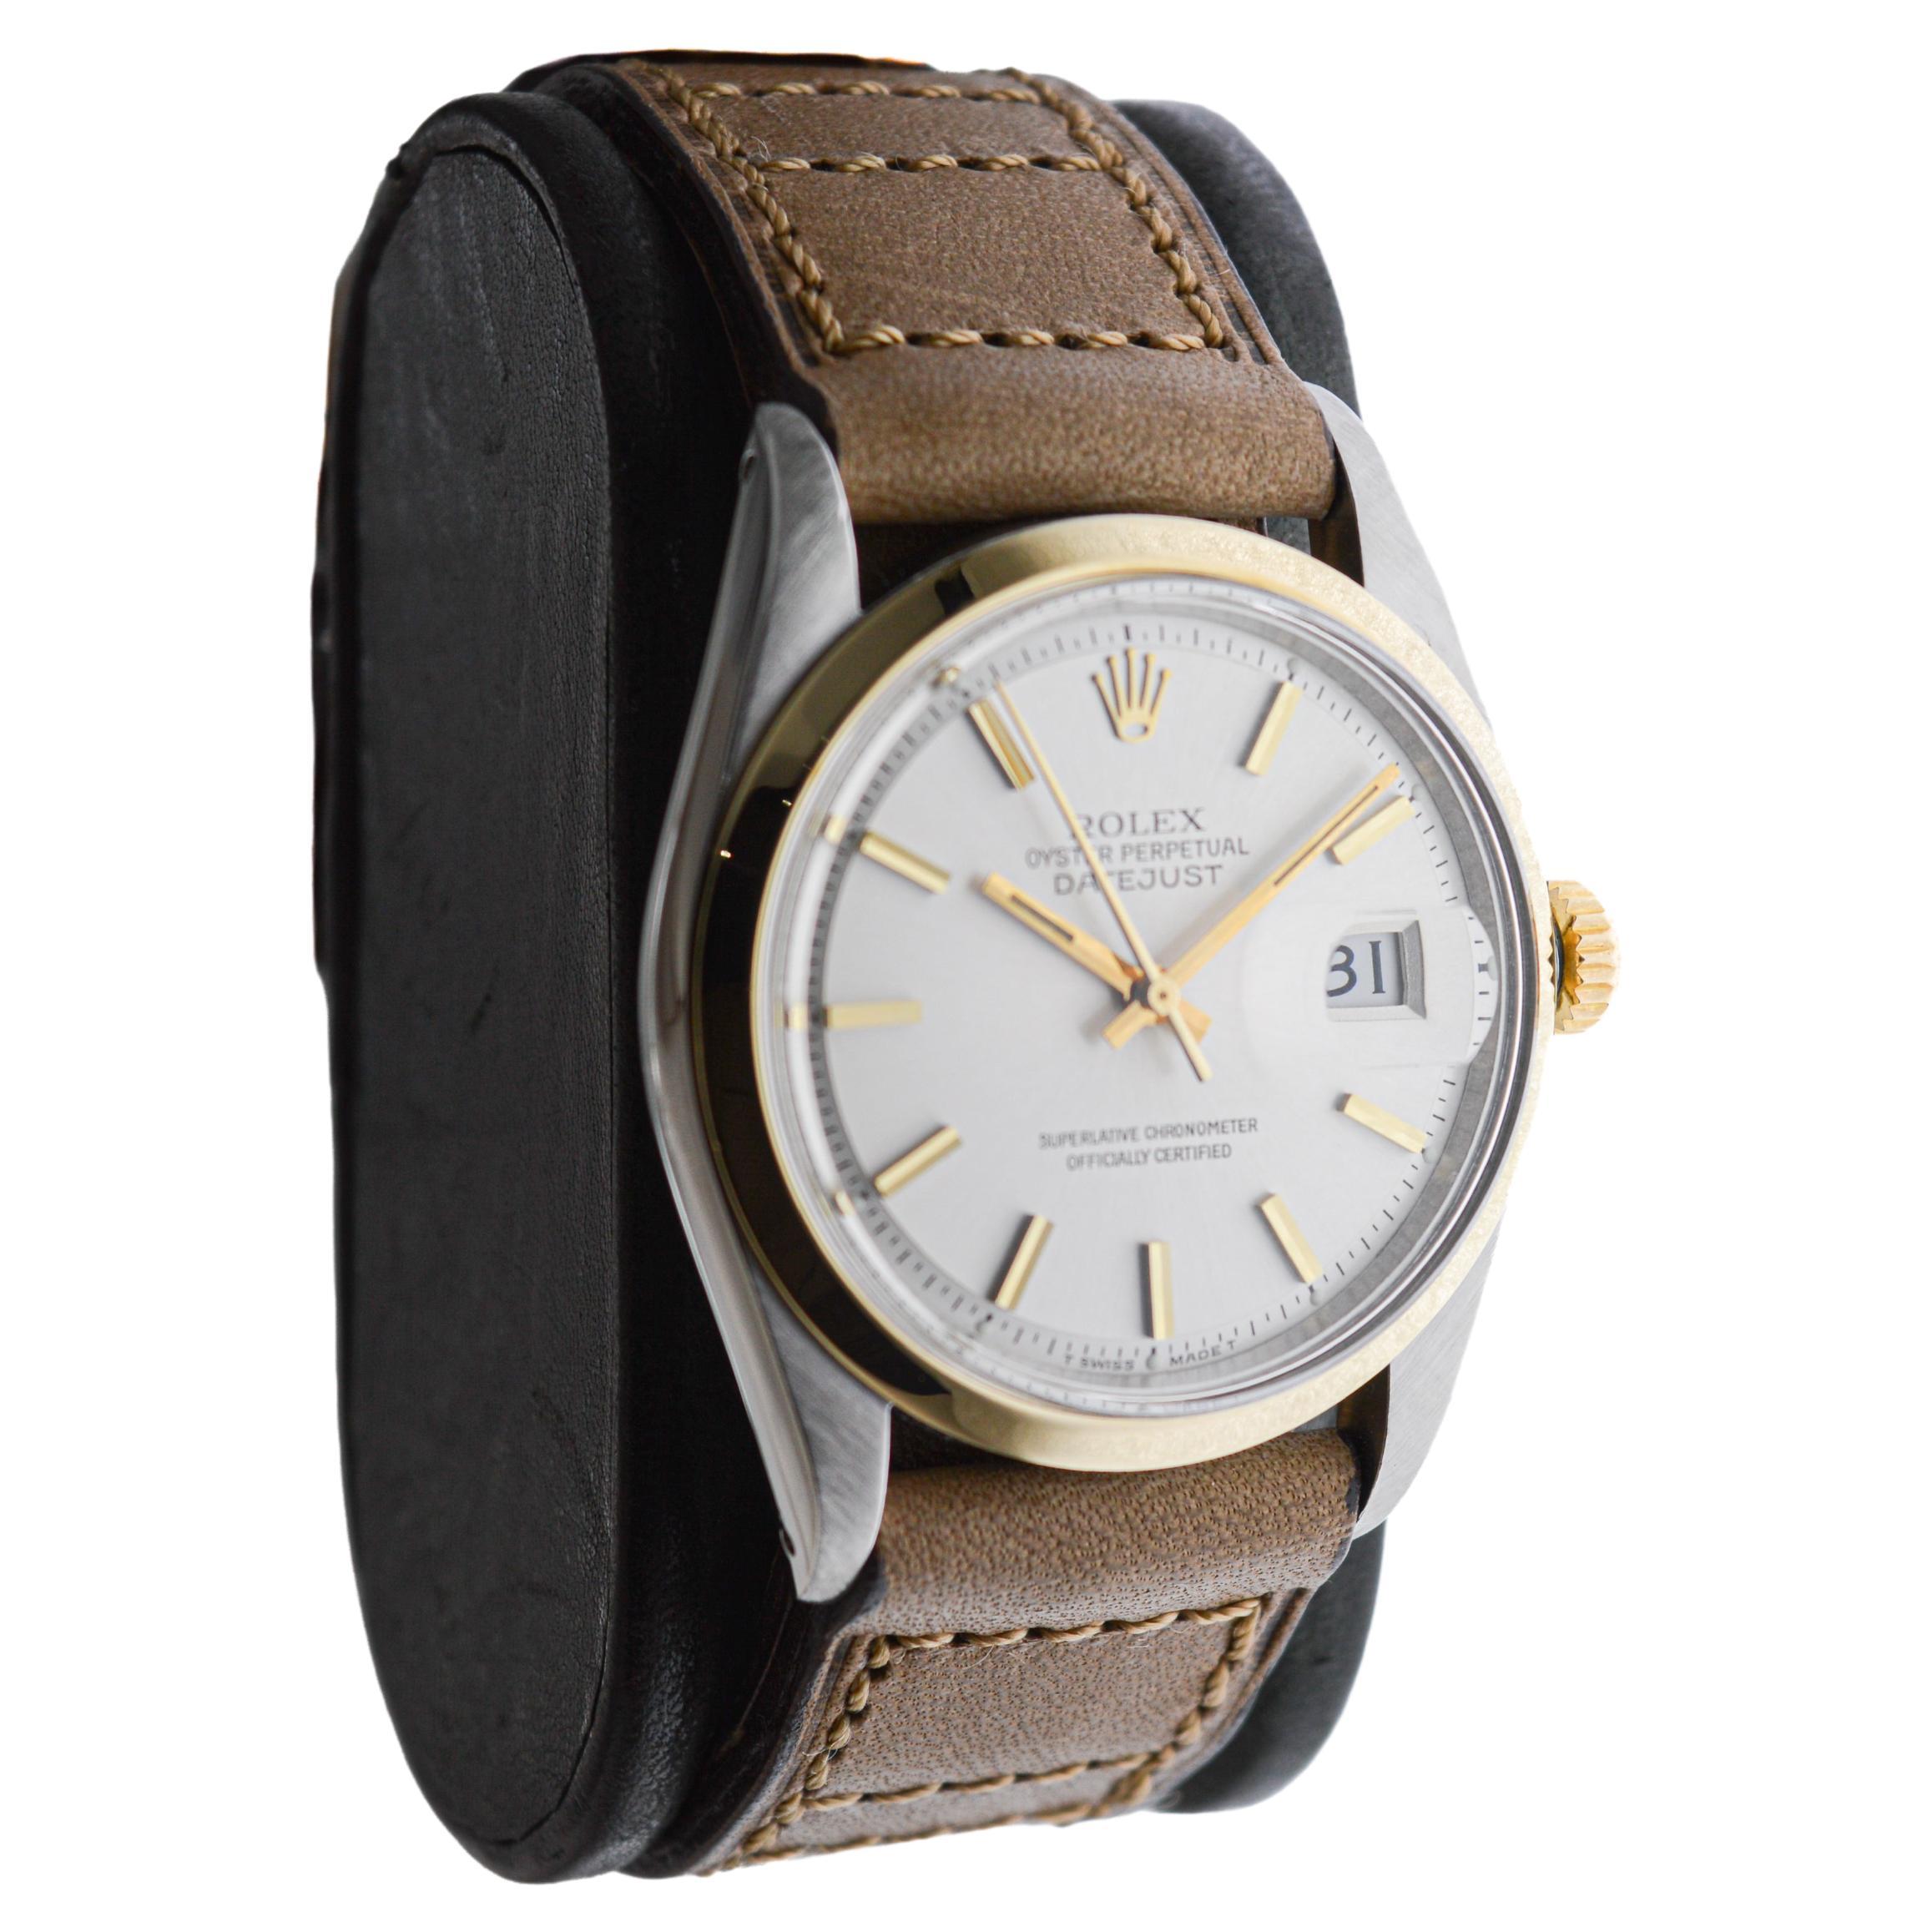 FABRIK / HAUS: Rolex Watch Company
STIL / REFERENZ: Oyster Perpetual Datejust / Referenz 1600
METALL / MATERIAL: Edelstahl und 14Kt. Massiv Gold 
CIRCA / JAHR: 1971
ABMESSUNGEN / GRÖSSE: Länge 42mm X Durchmesser 36mm
UHRWERK / KALIBER: Ewiger Aufzug